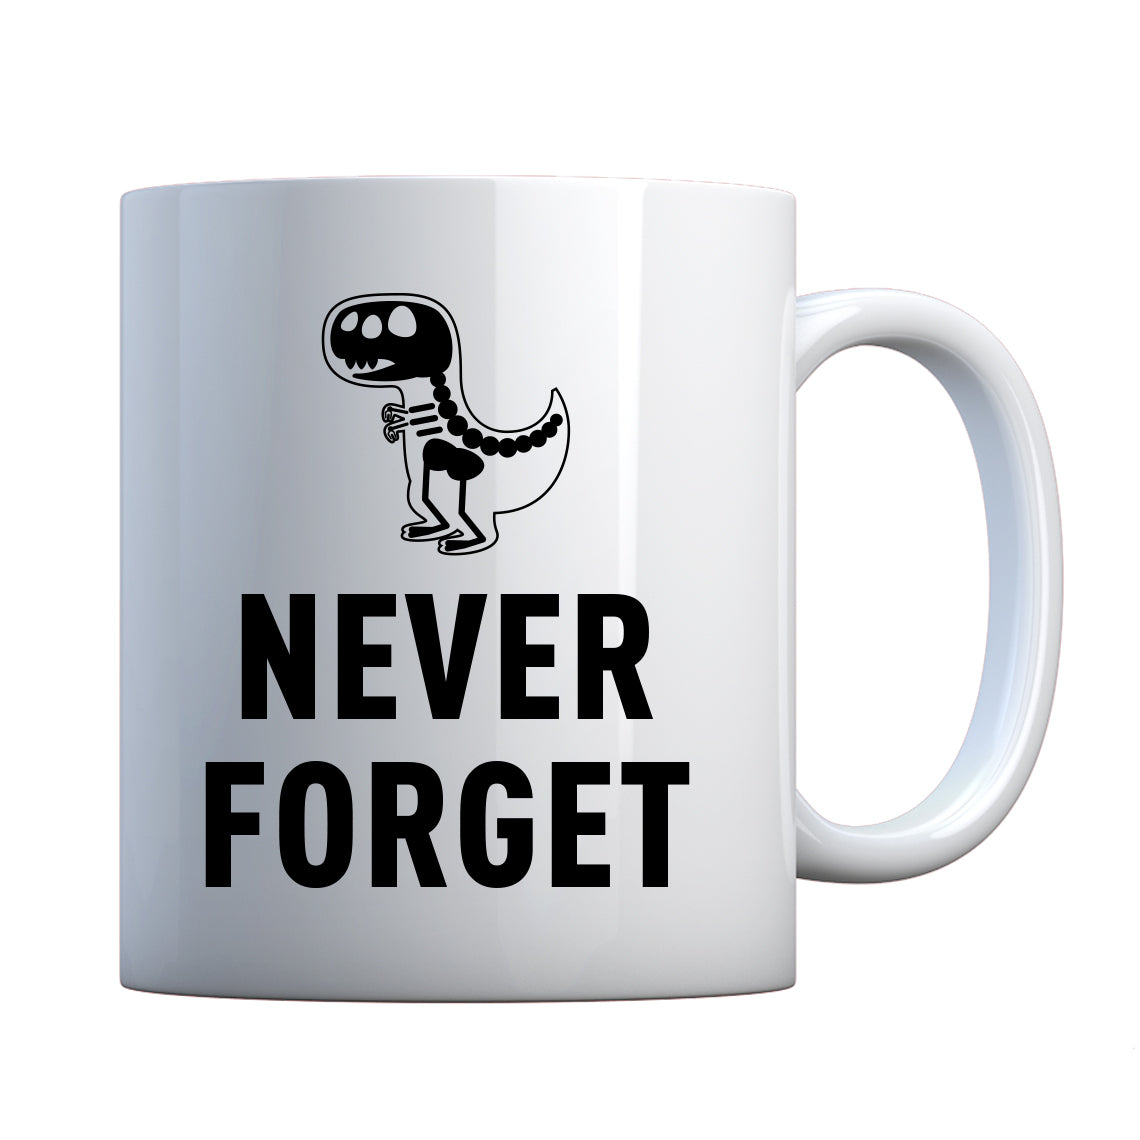 Mug Never Forget Ceramic Gift Mug